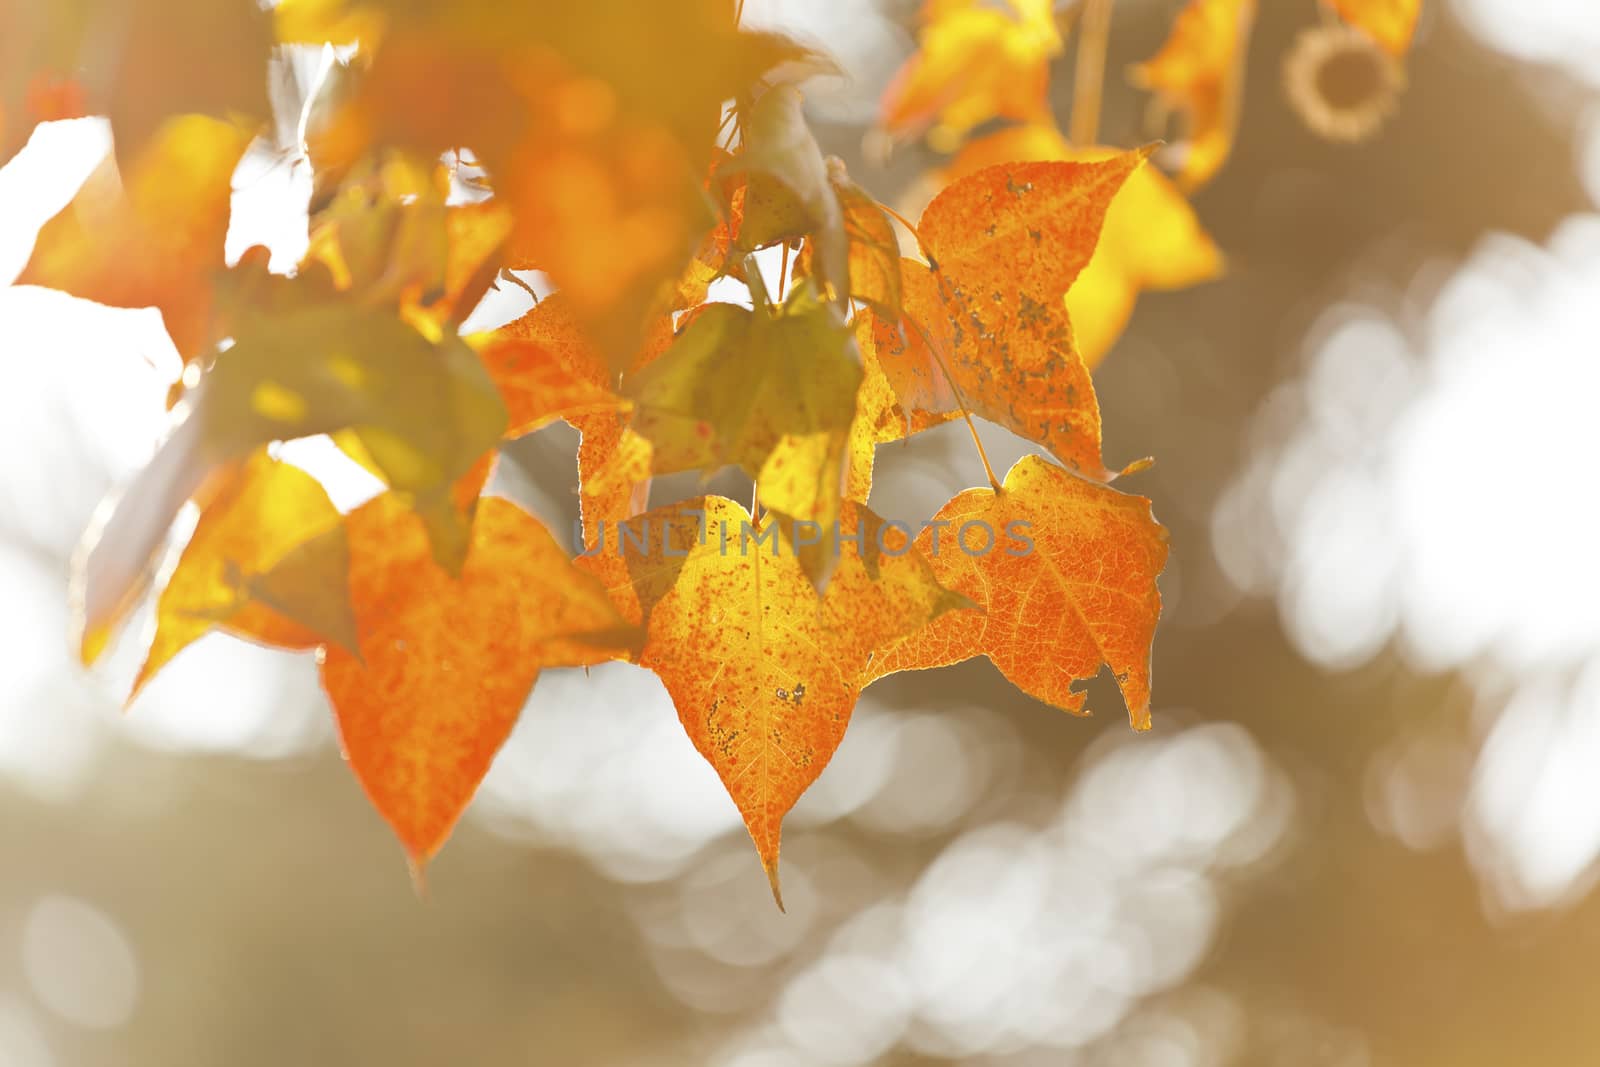 Autumn leaves under sunlight